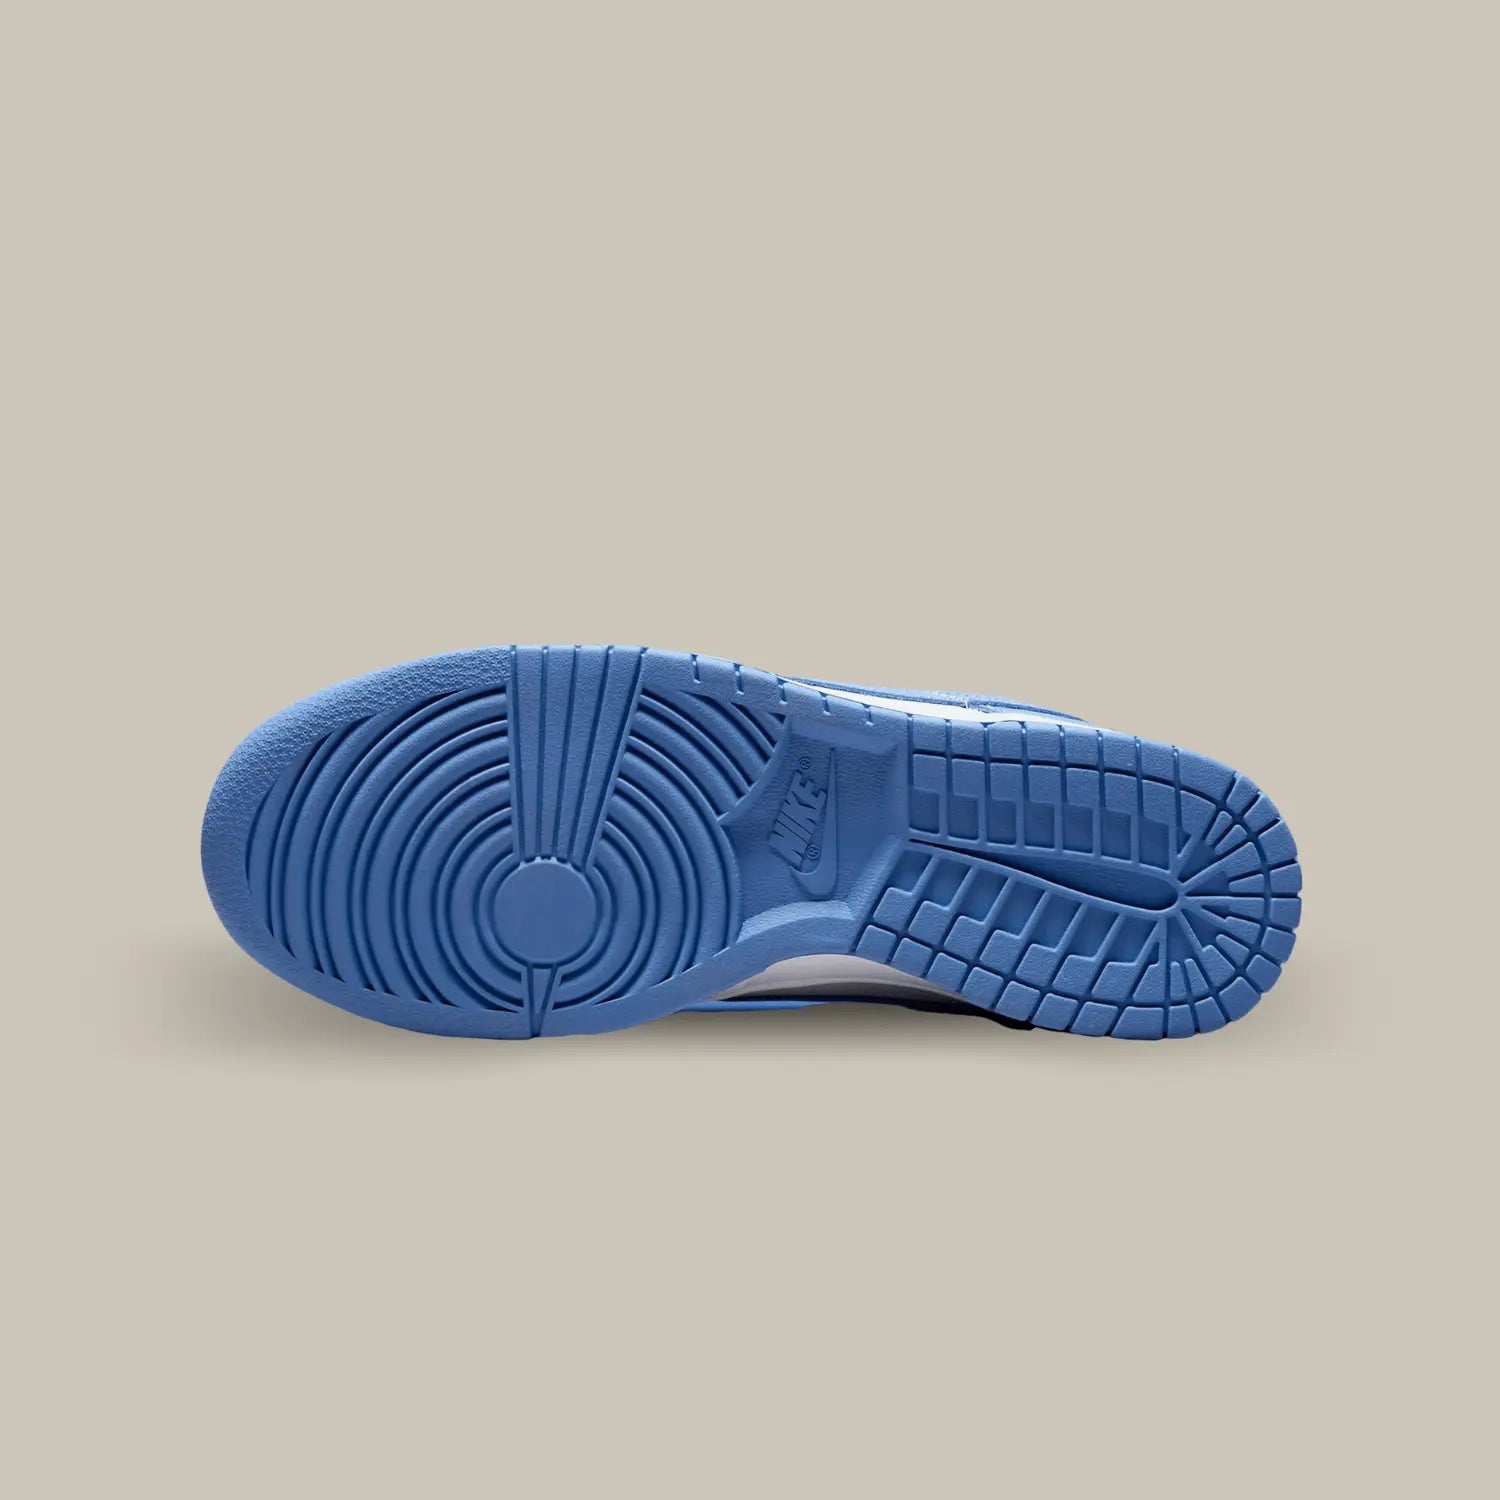 La semelle de la Nike Dunk Low Polar Blue de couleur bleu.